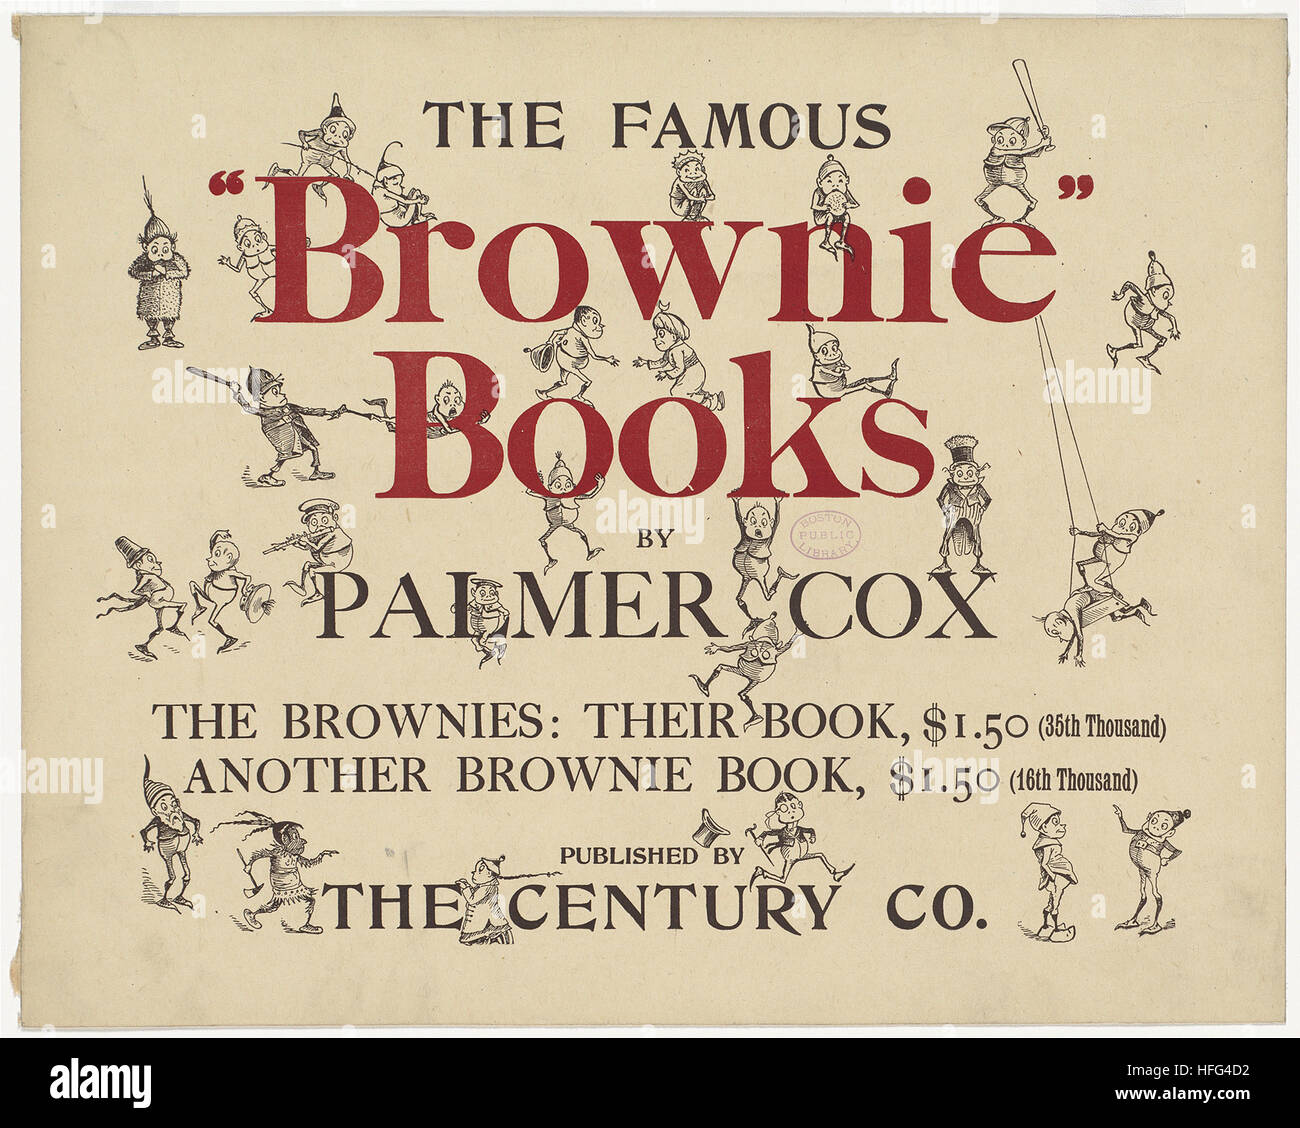 Le fameux brownie livres de Palmer Cox Banque D'Images